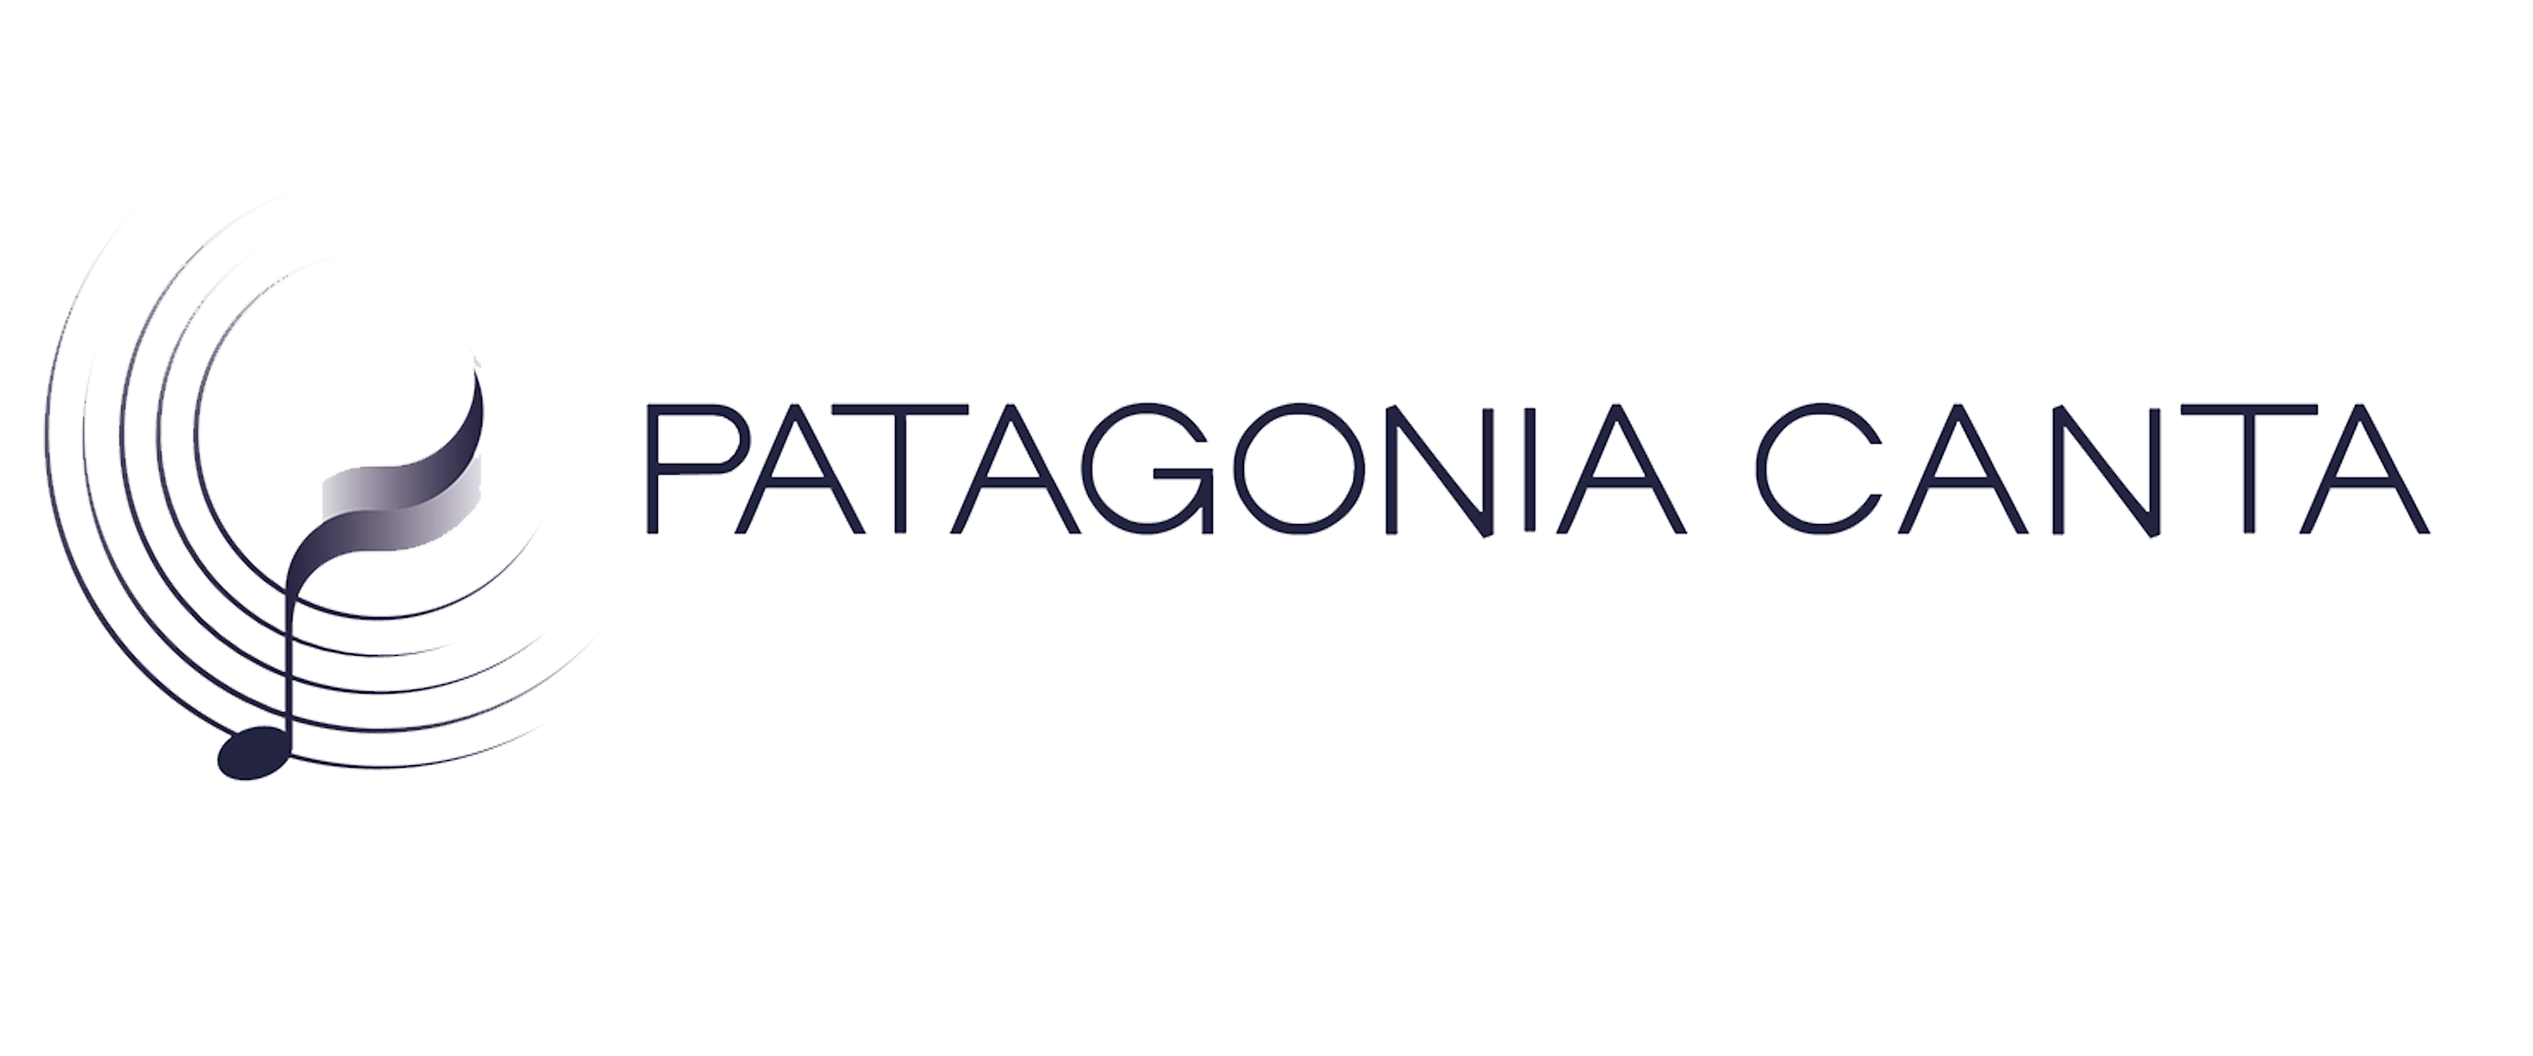 Patagonia Canta